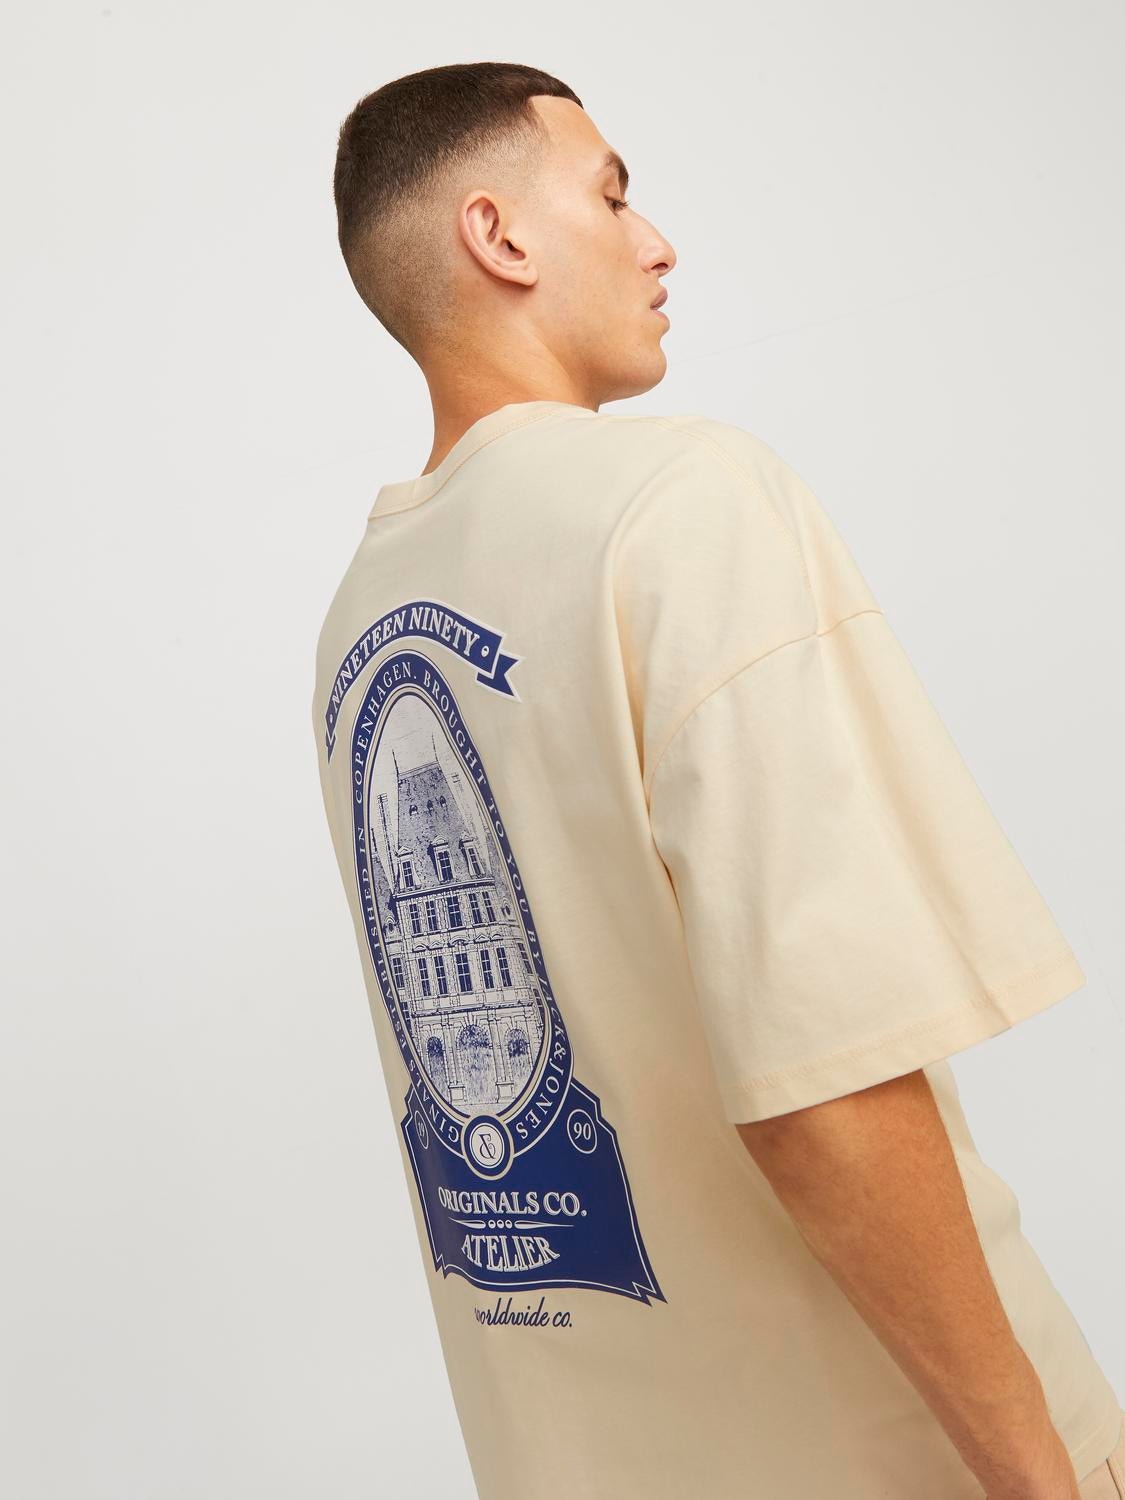 Jack & Jones Gedruckt Rundhals T-shirt -Buttercream - 12252644